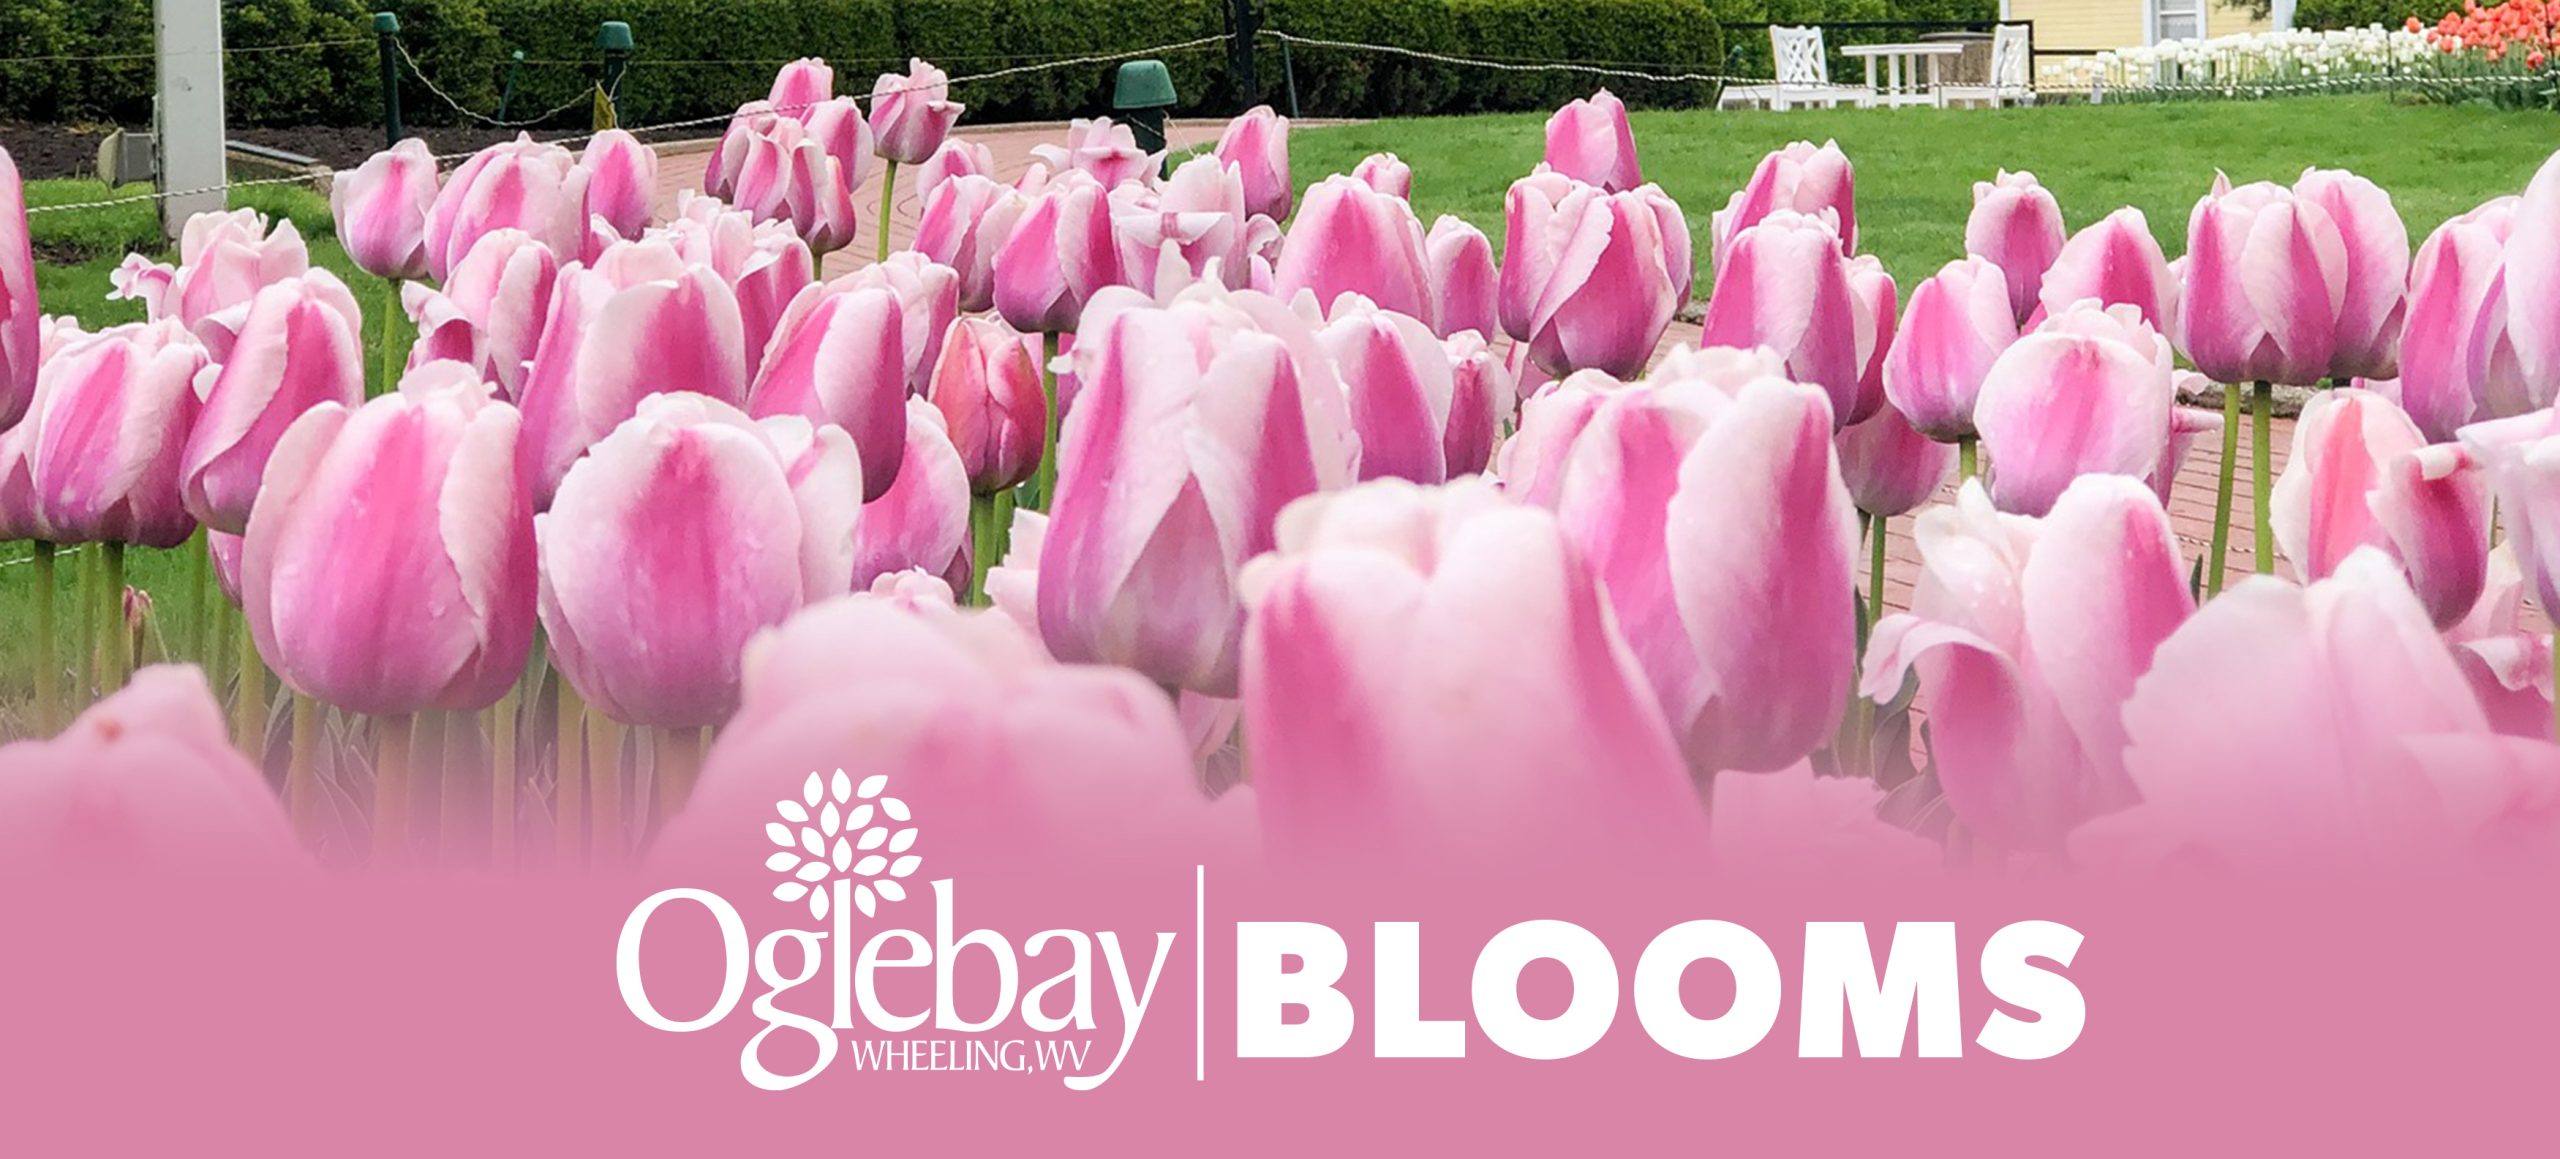 Oglebay Blooms header photo